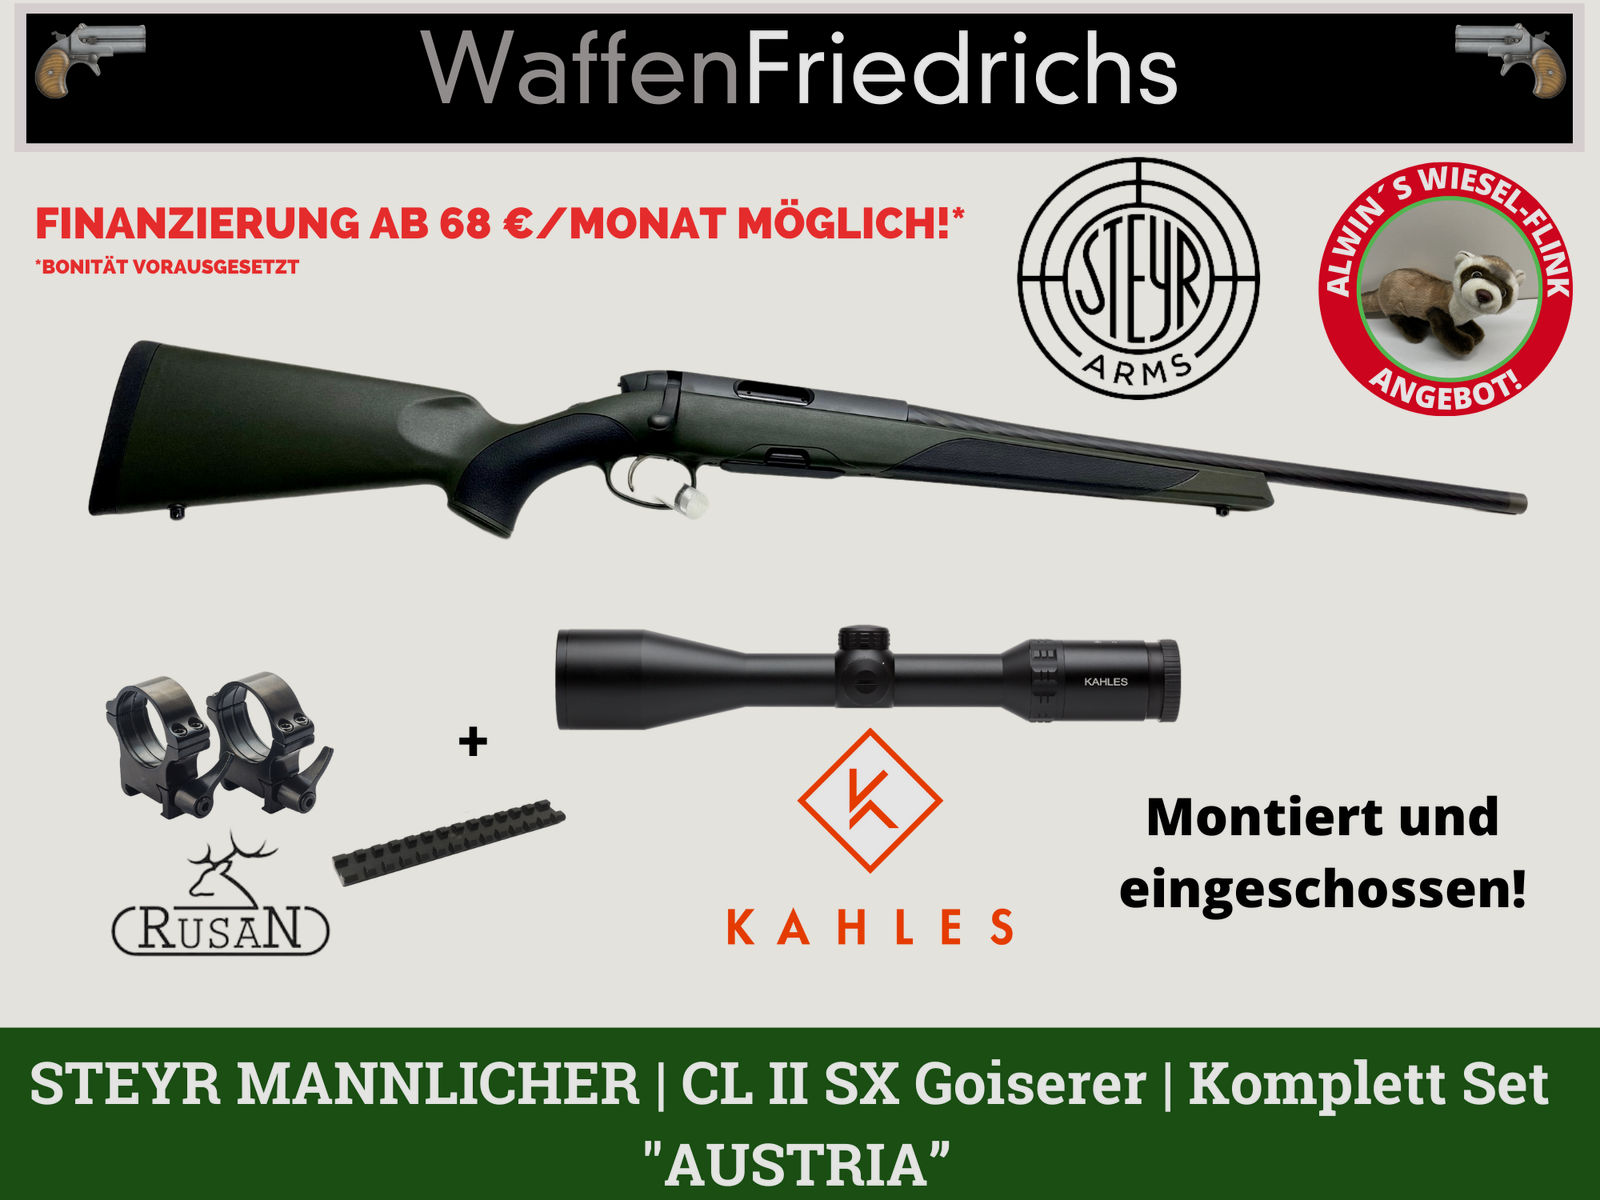 Steyr Mannlicher Classic - CL II SX Gosierer |Jungjäger |  Komplettangebot "Austria" - Wiesel-Flink Angebot! 15% gespart!- WaffenFriedrichs